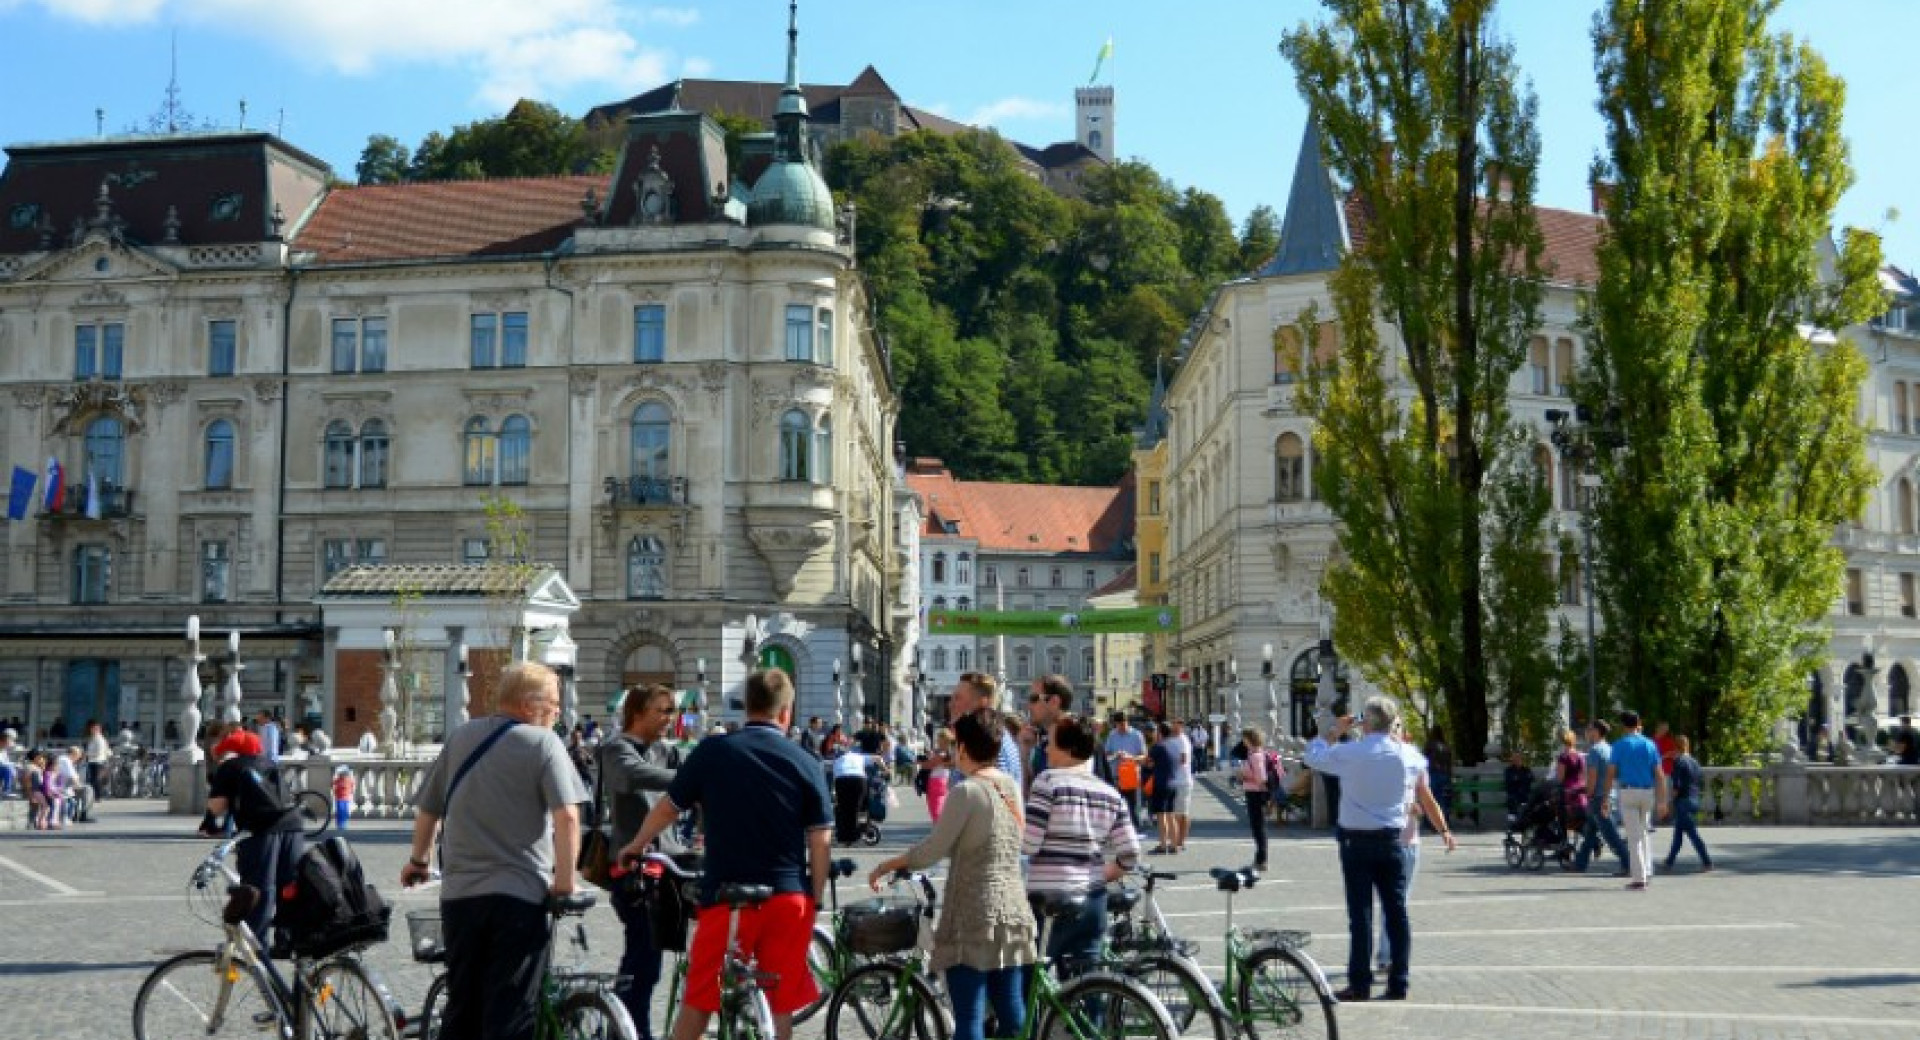 Voden ogled na kolesih. Pogled na Ljubljanski grad.